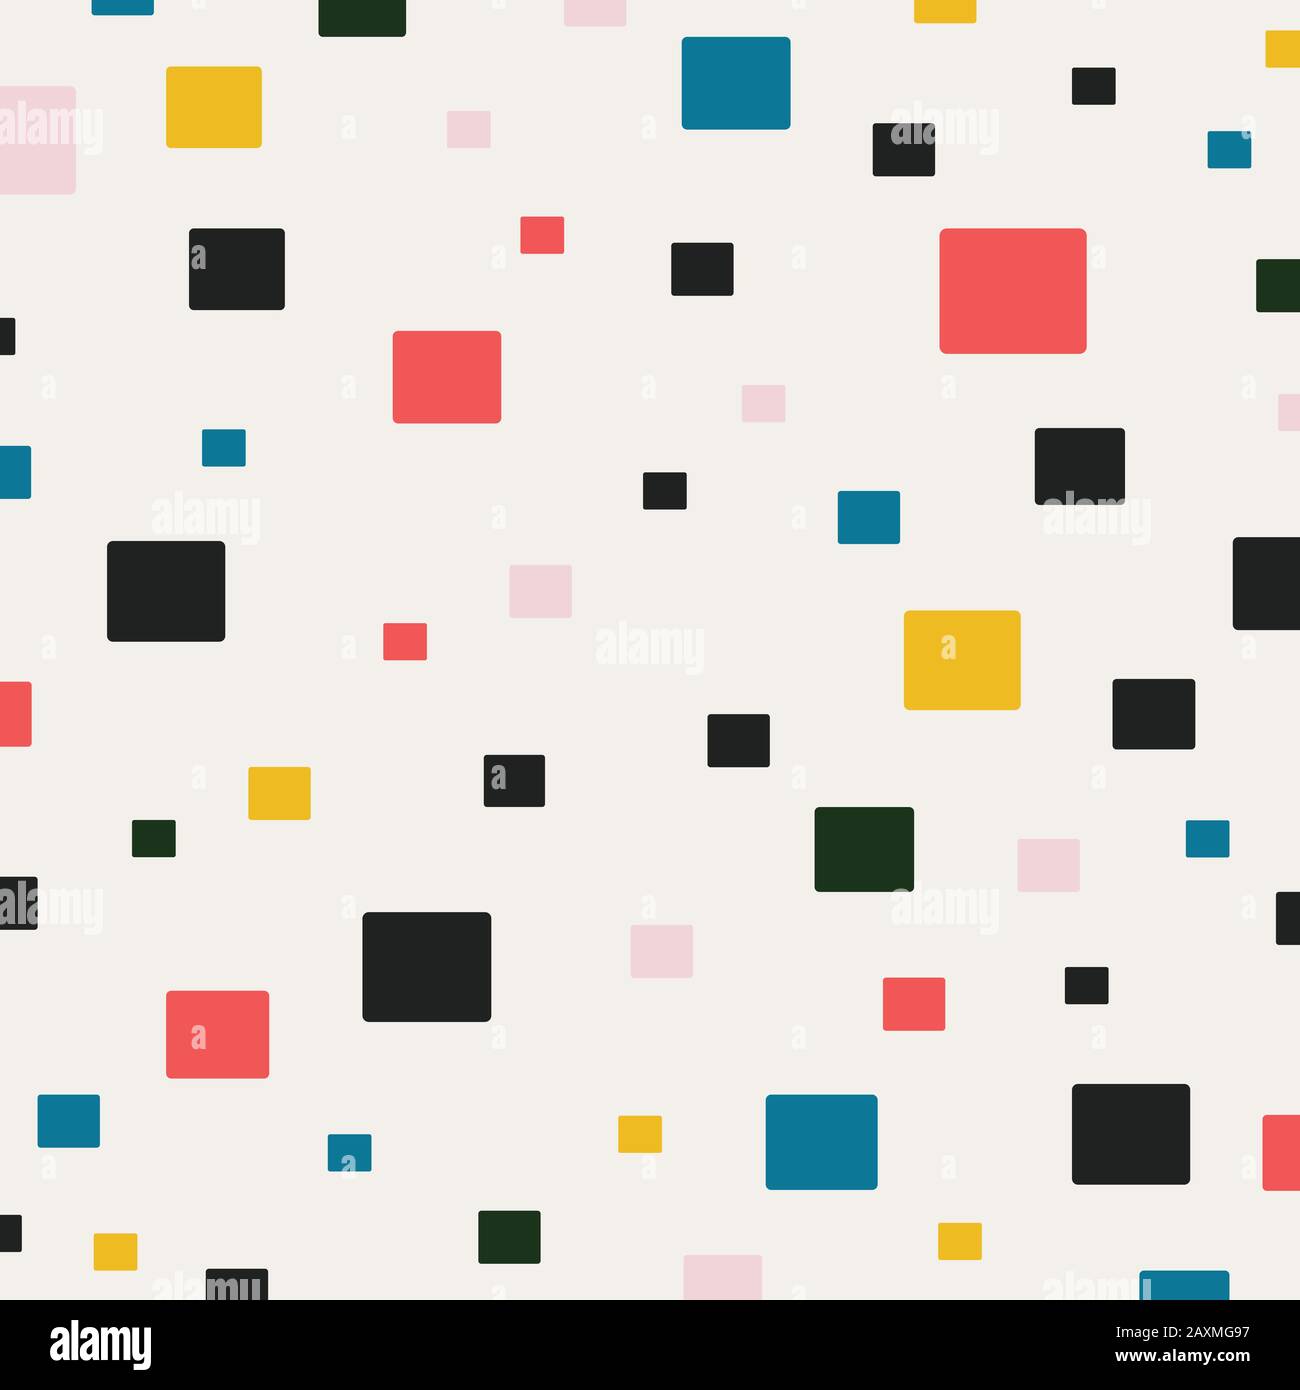 Abstraktes quadratisches Muster mit minimalem pastellfarbenem Hintergrund. Dekorieren für Werbung, Poster, Grafiken, Vorlagendesign, Druck. Illustrationsvektor eps10 Stock Vektor